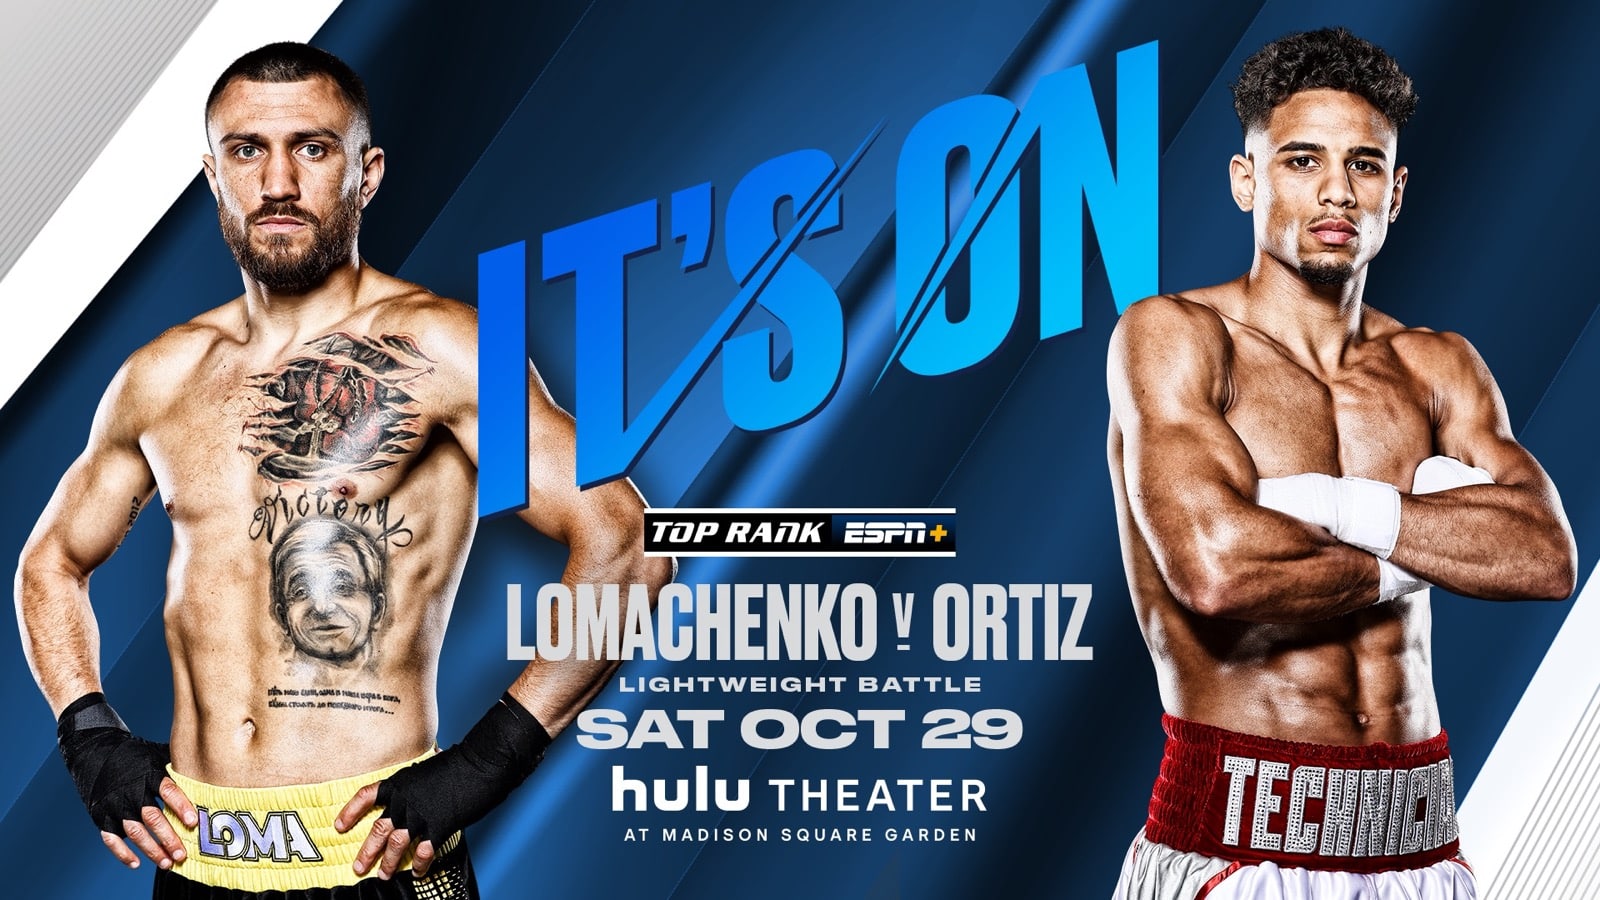 Lomachenko vs Ortiz - FITE, ESPN+ - Oct. 29 - 9 pm ET